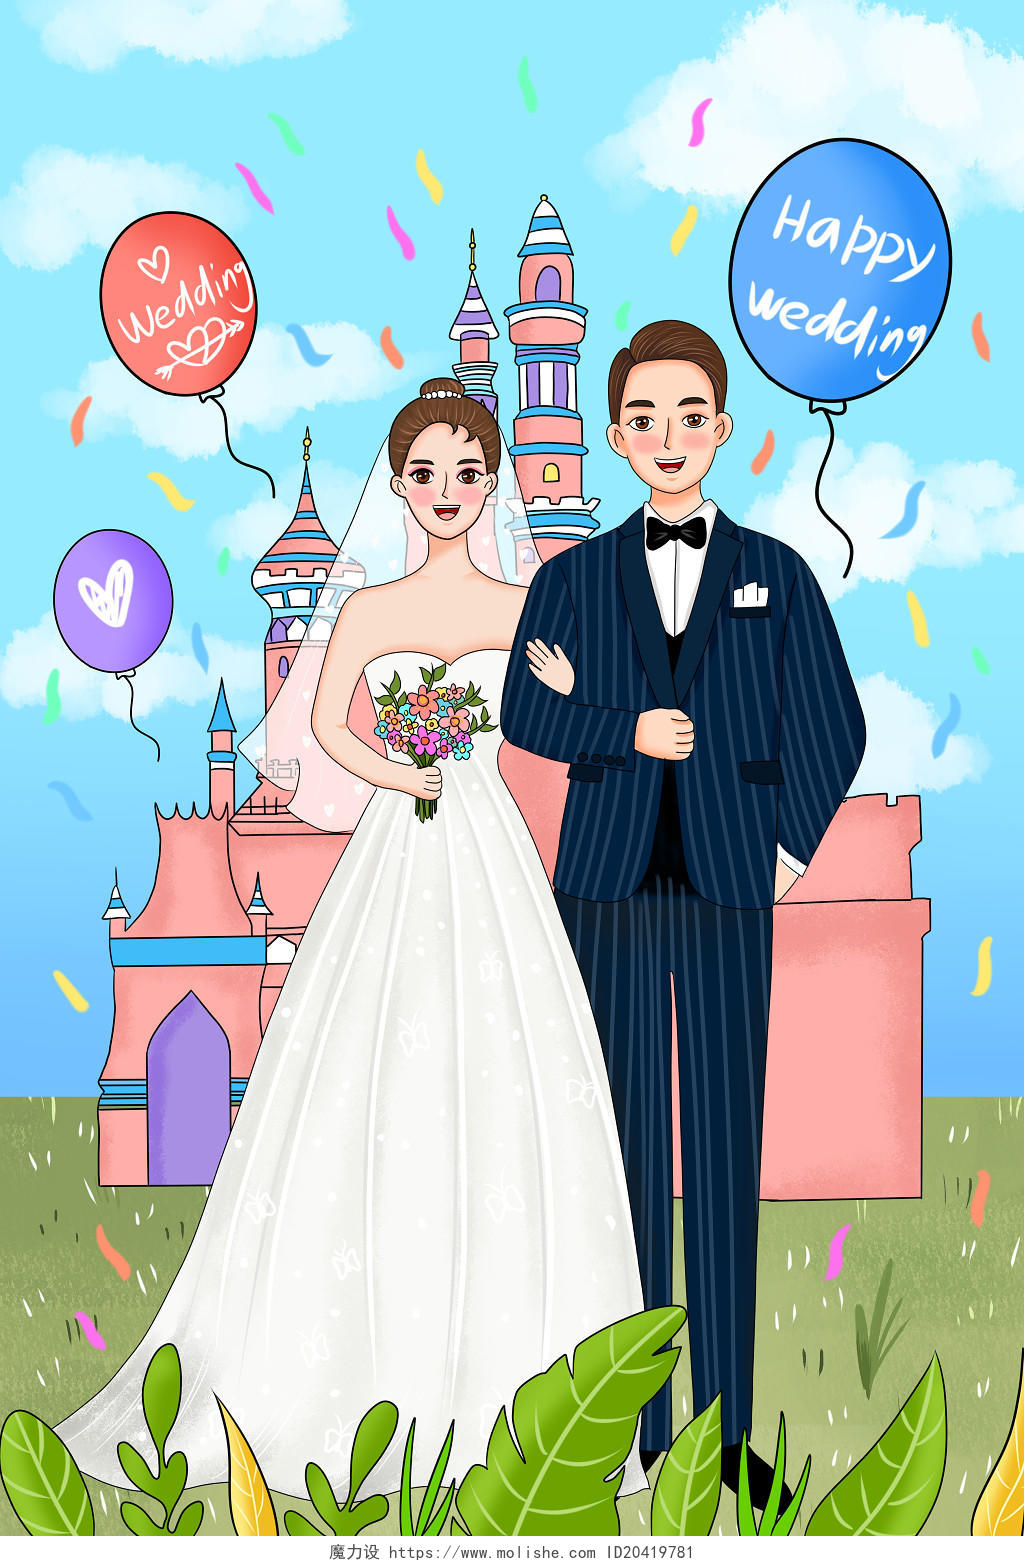 婚庆婚礼结婚彩色卡通手绘婚礼新郎新娘人物素材原创插画海报